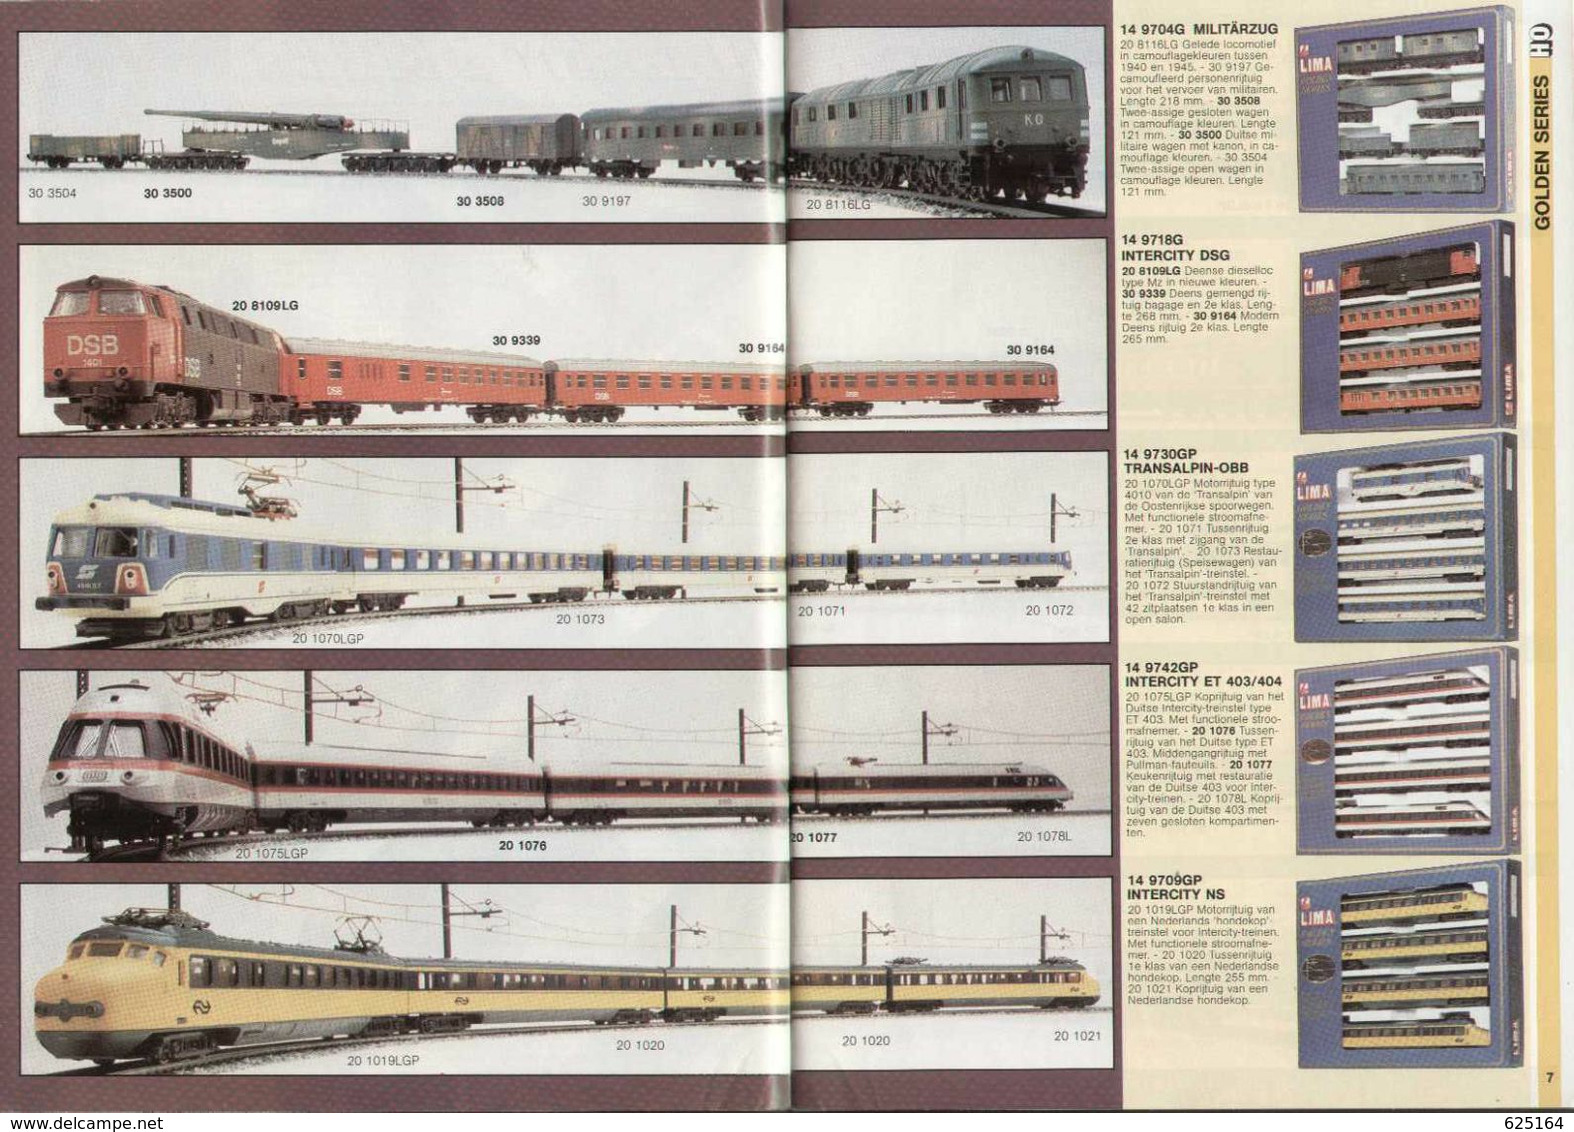 Catalogue LIMA 1983/84 Treinen - Nederlandse Uitgave - Schaal HO/N - Nederlands